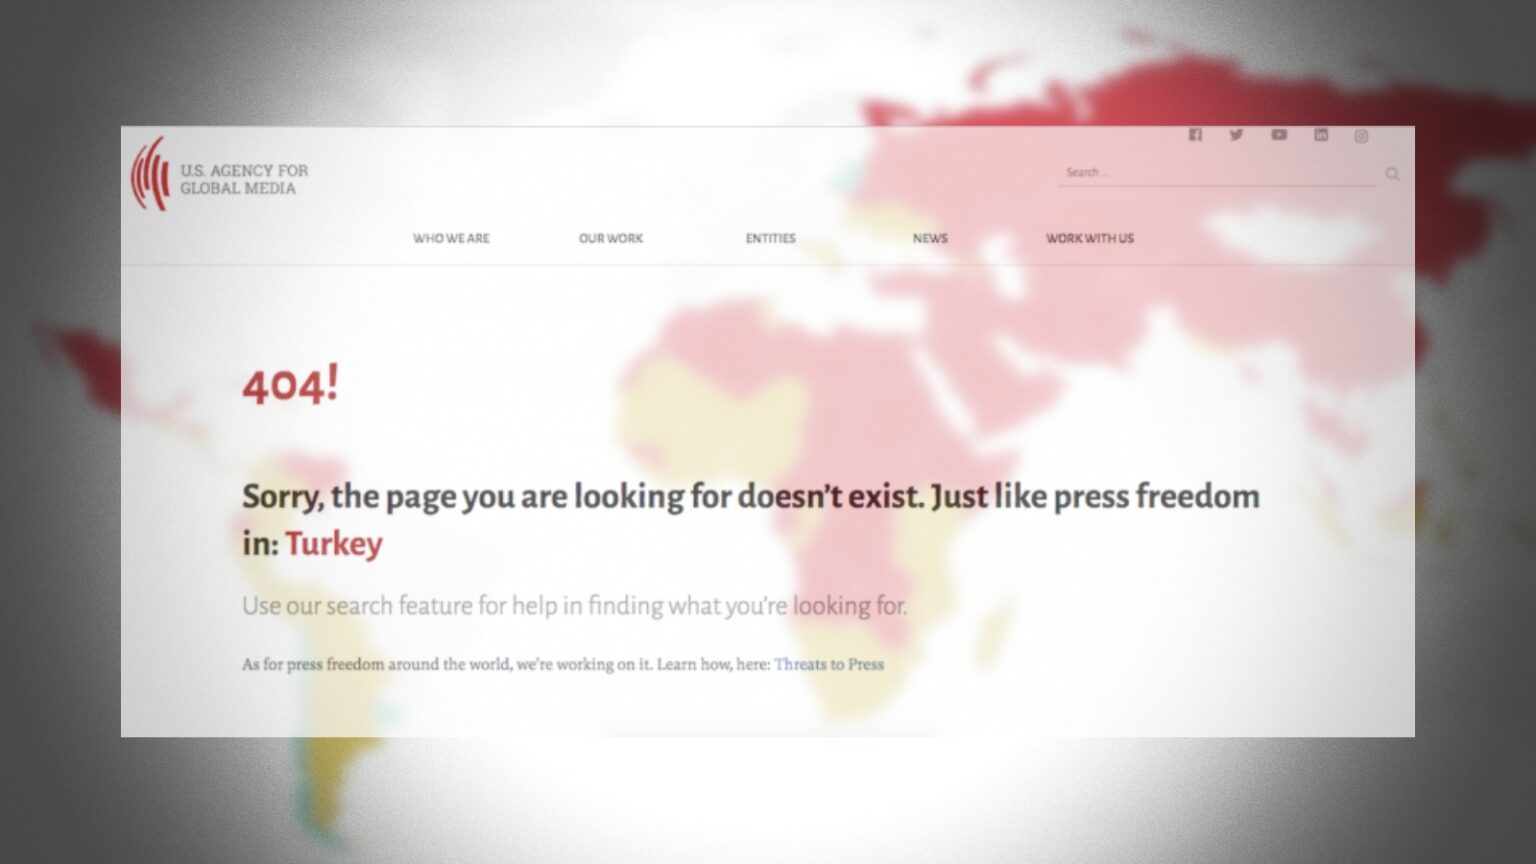 ABD hükümetinin Küresel Medya Ajansı (USAG), sitedeki hatalı aramalarla ilgili Türkiye'deki ifade özgürlüğü ile ilgili kısıtlamaları eleştiren mesajlar paylaşmaya başladı. 